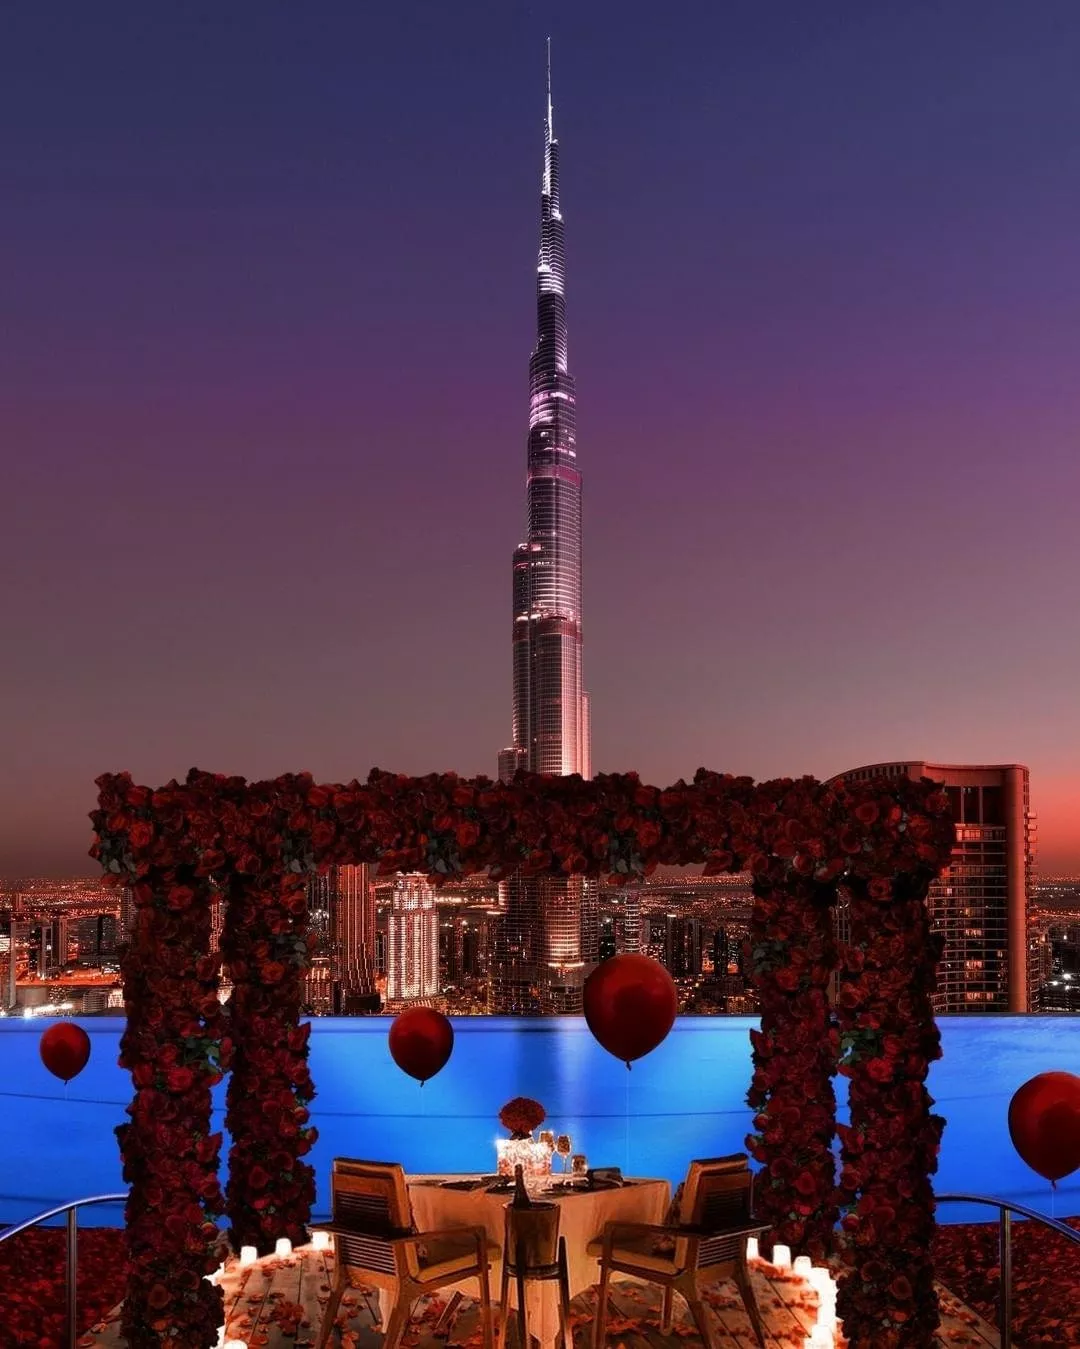 أبرز عروض عيد الحب في دبي لعام 2021، لتستمتعي مع زوجكِ في هذه المناسبة الرومانسية